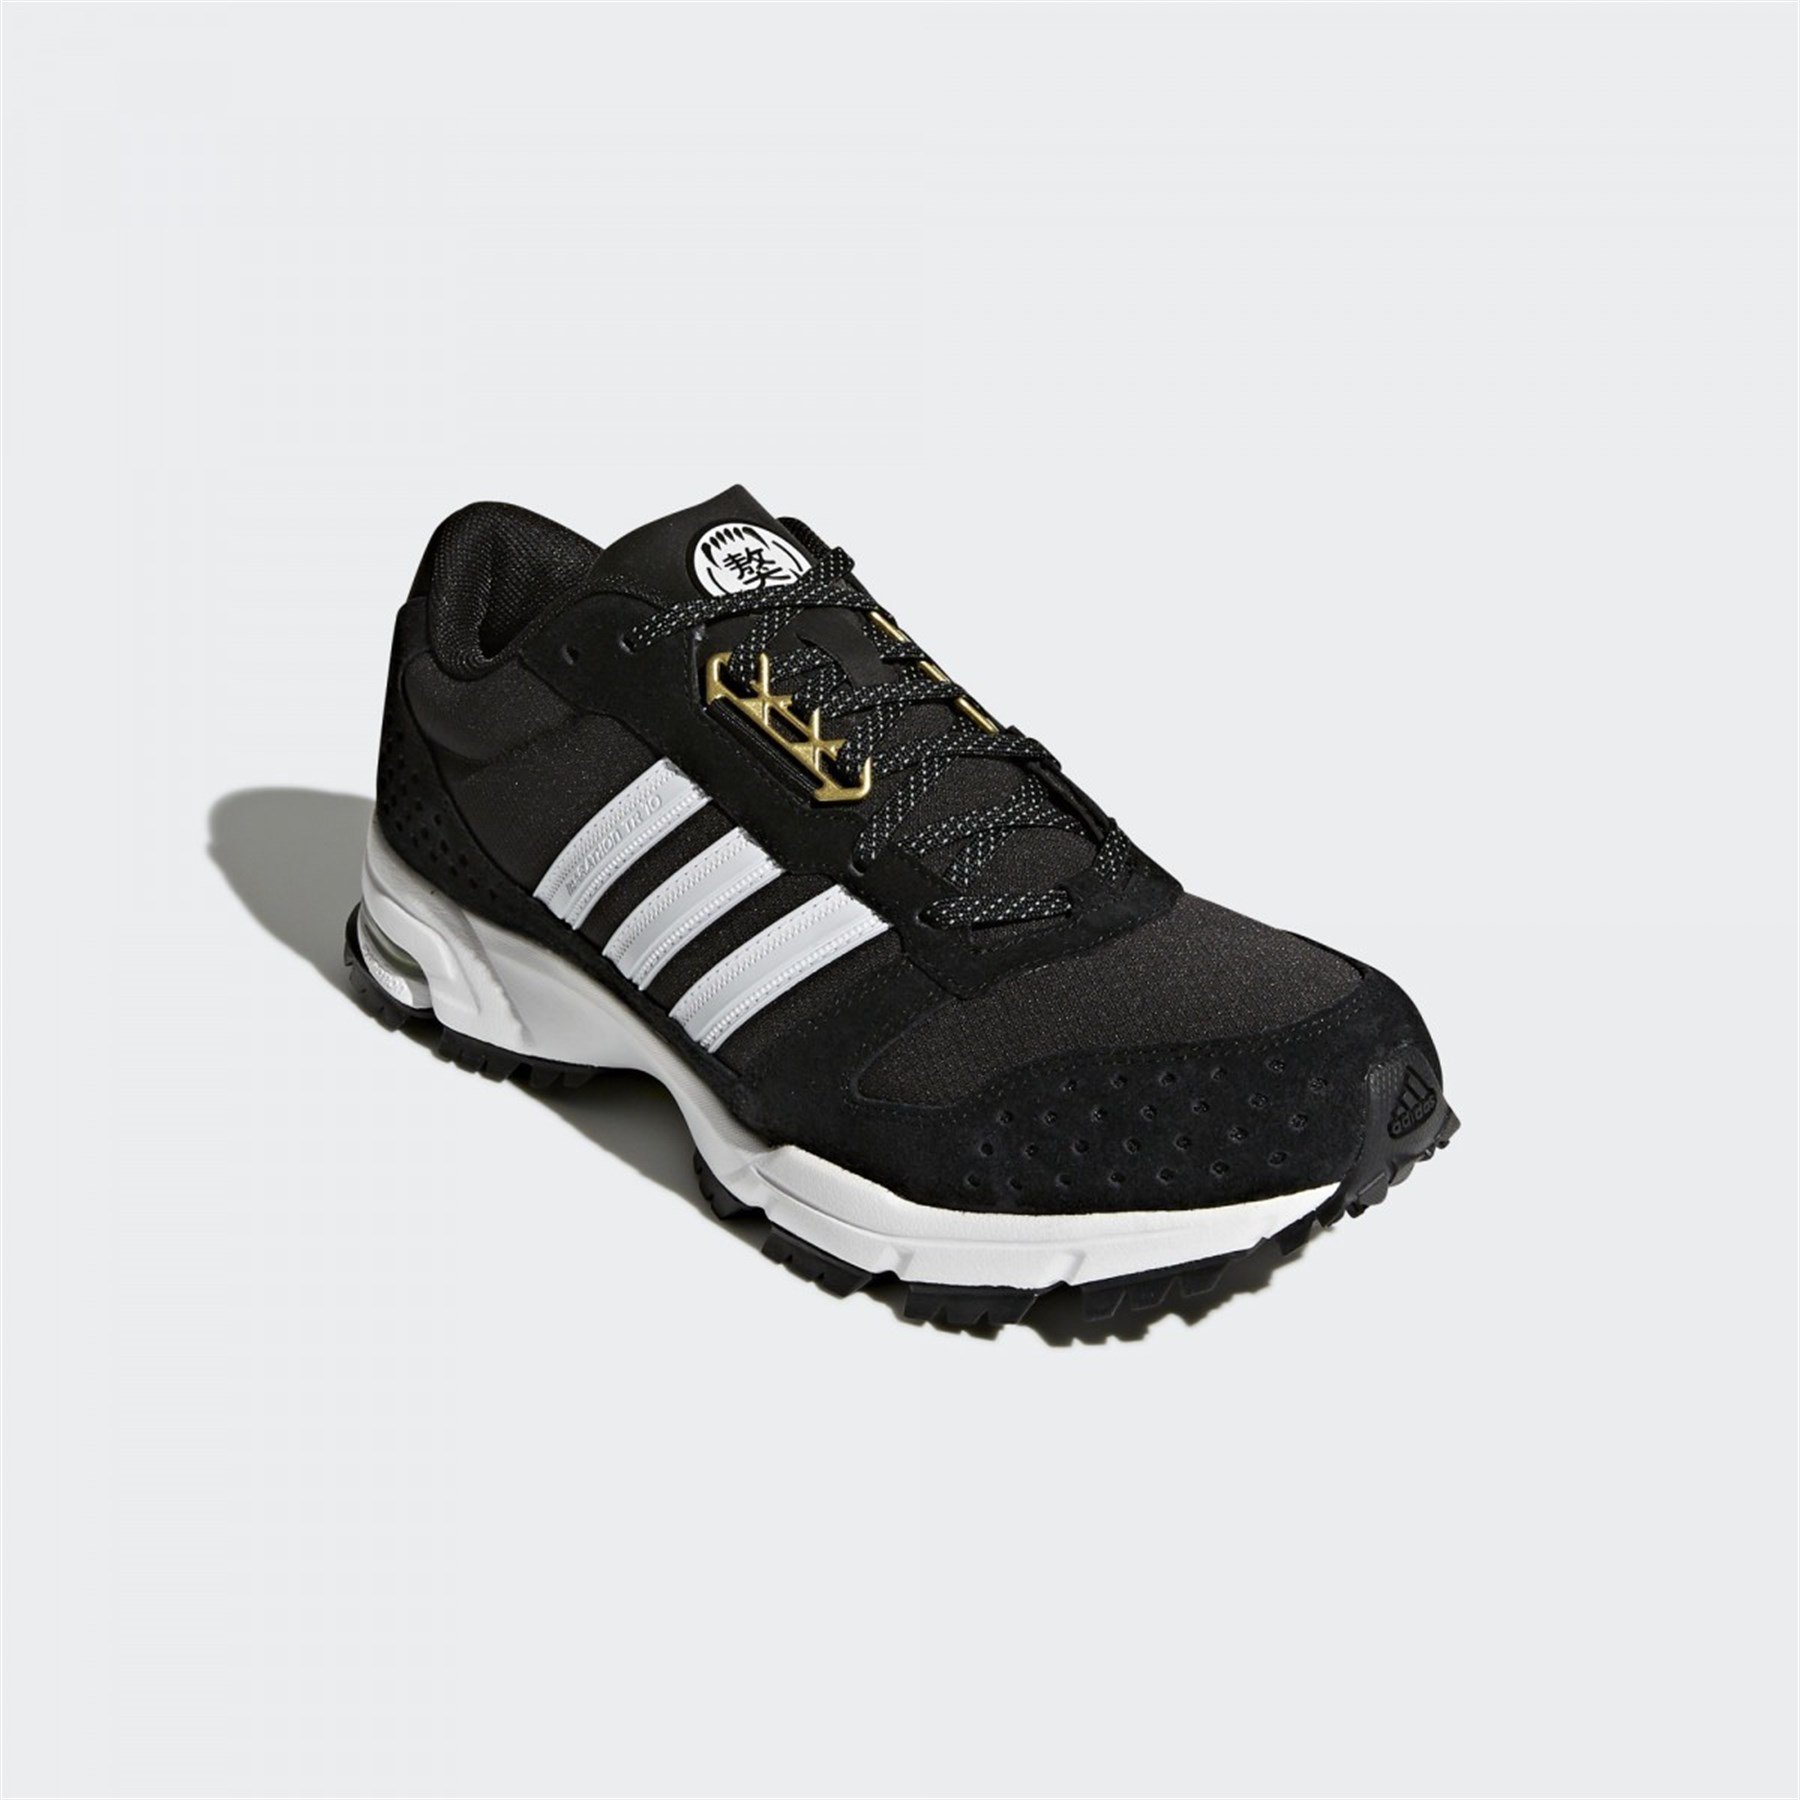 Adidas Erkek Koşu Yürüyüş Ayakkabısı CM8341 marathon 10 tr CNY